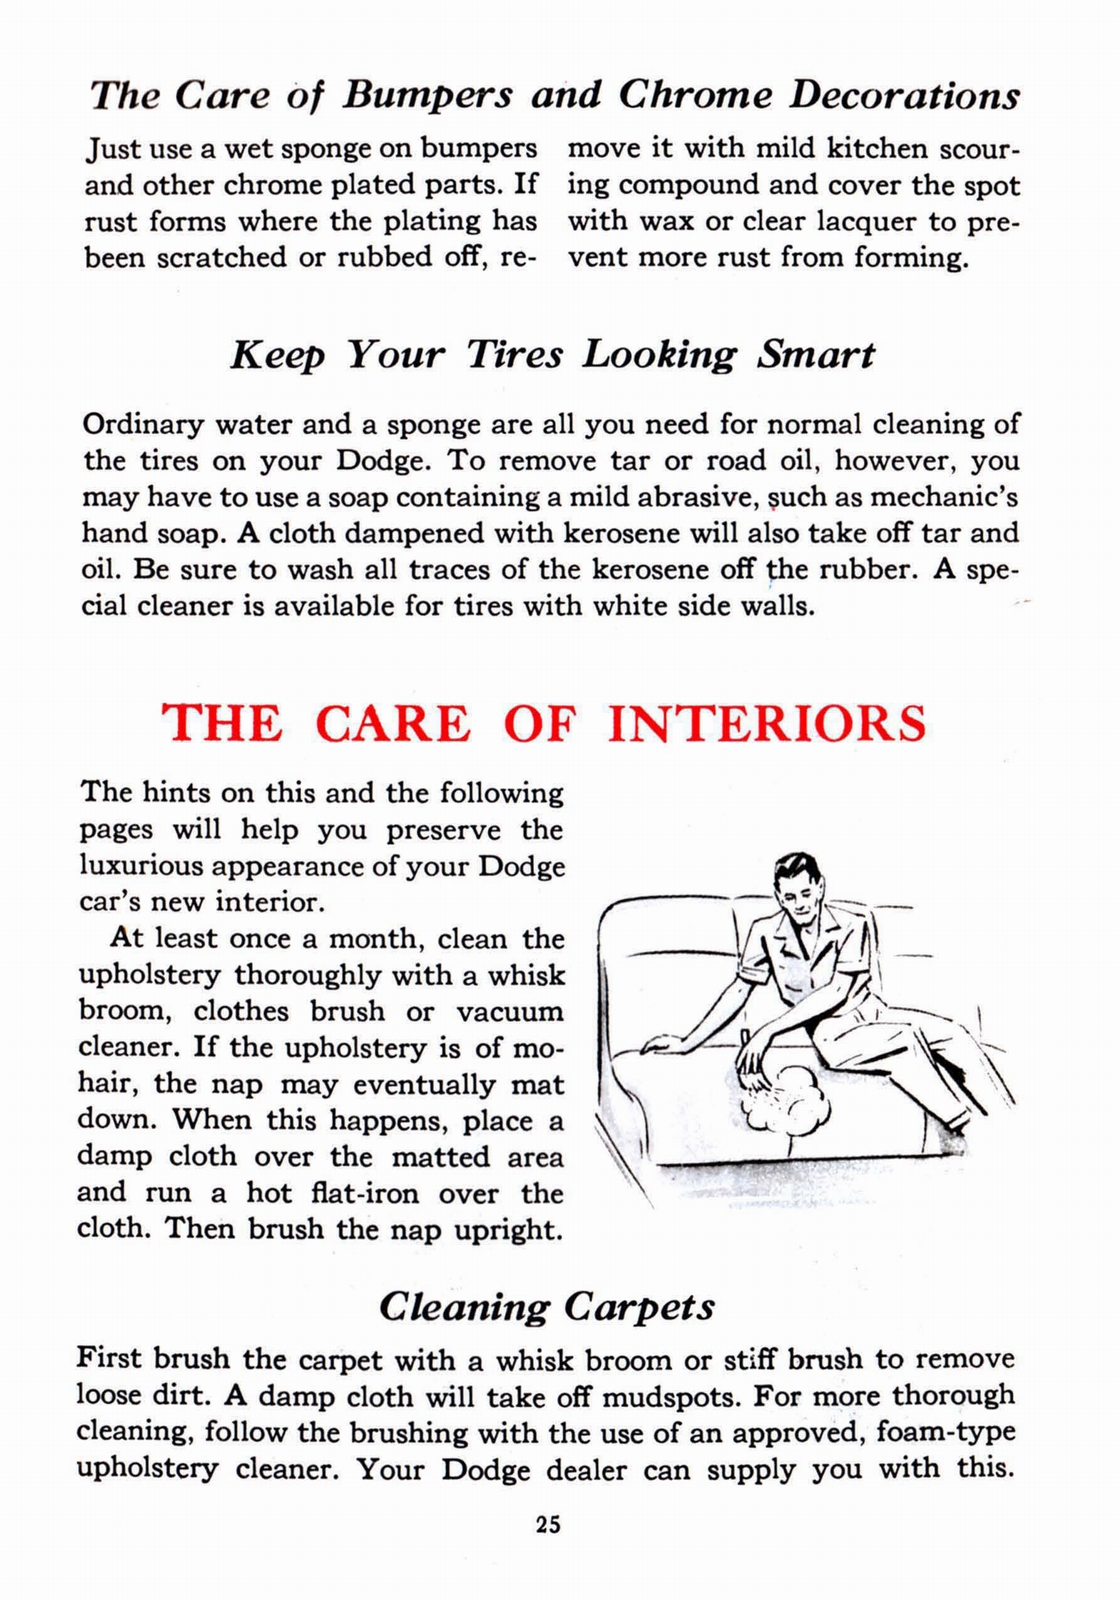 n_1941 Dodge Owners Manual-25.jpg